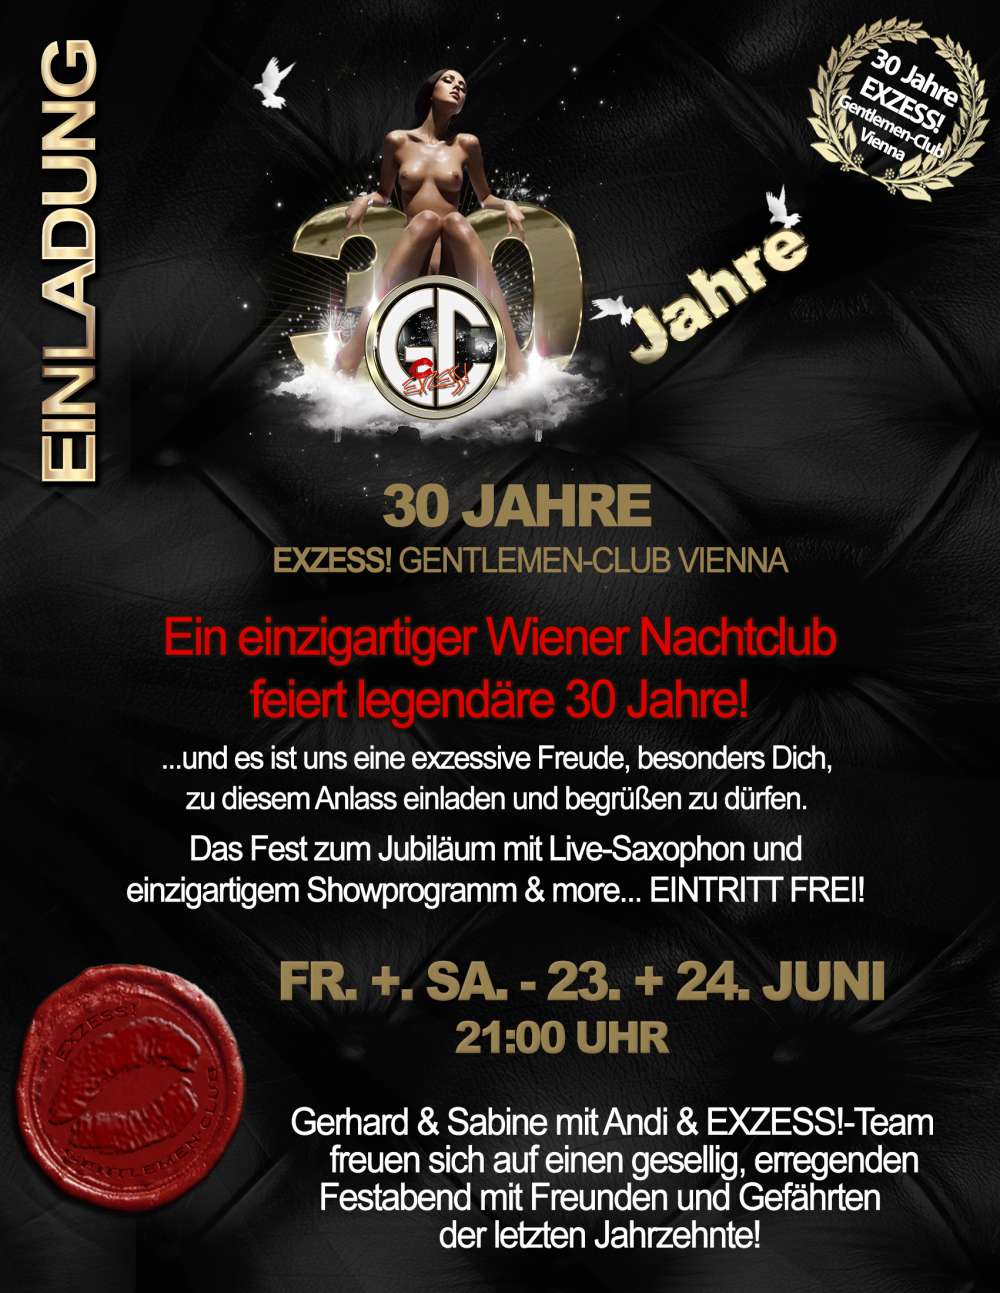 EXZESS! Nightclub Vienna - Nightclub - Nachtclub